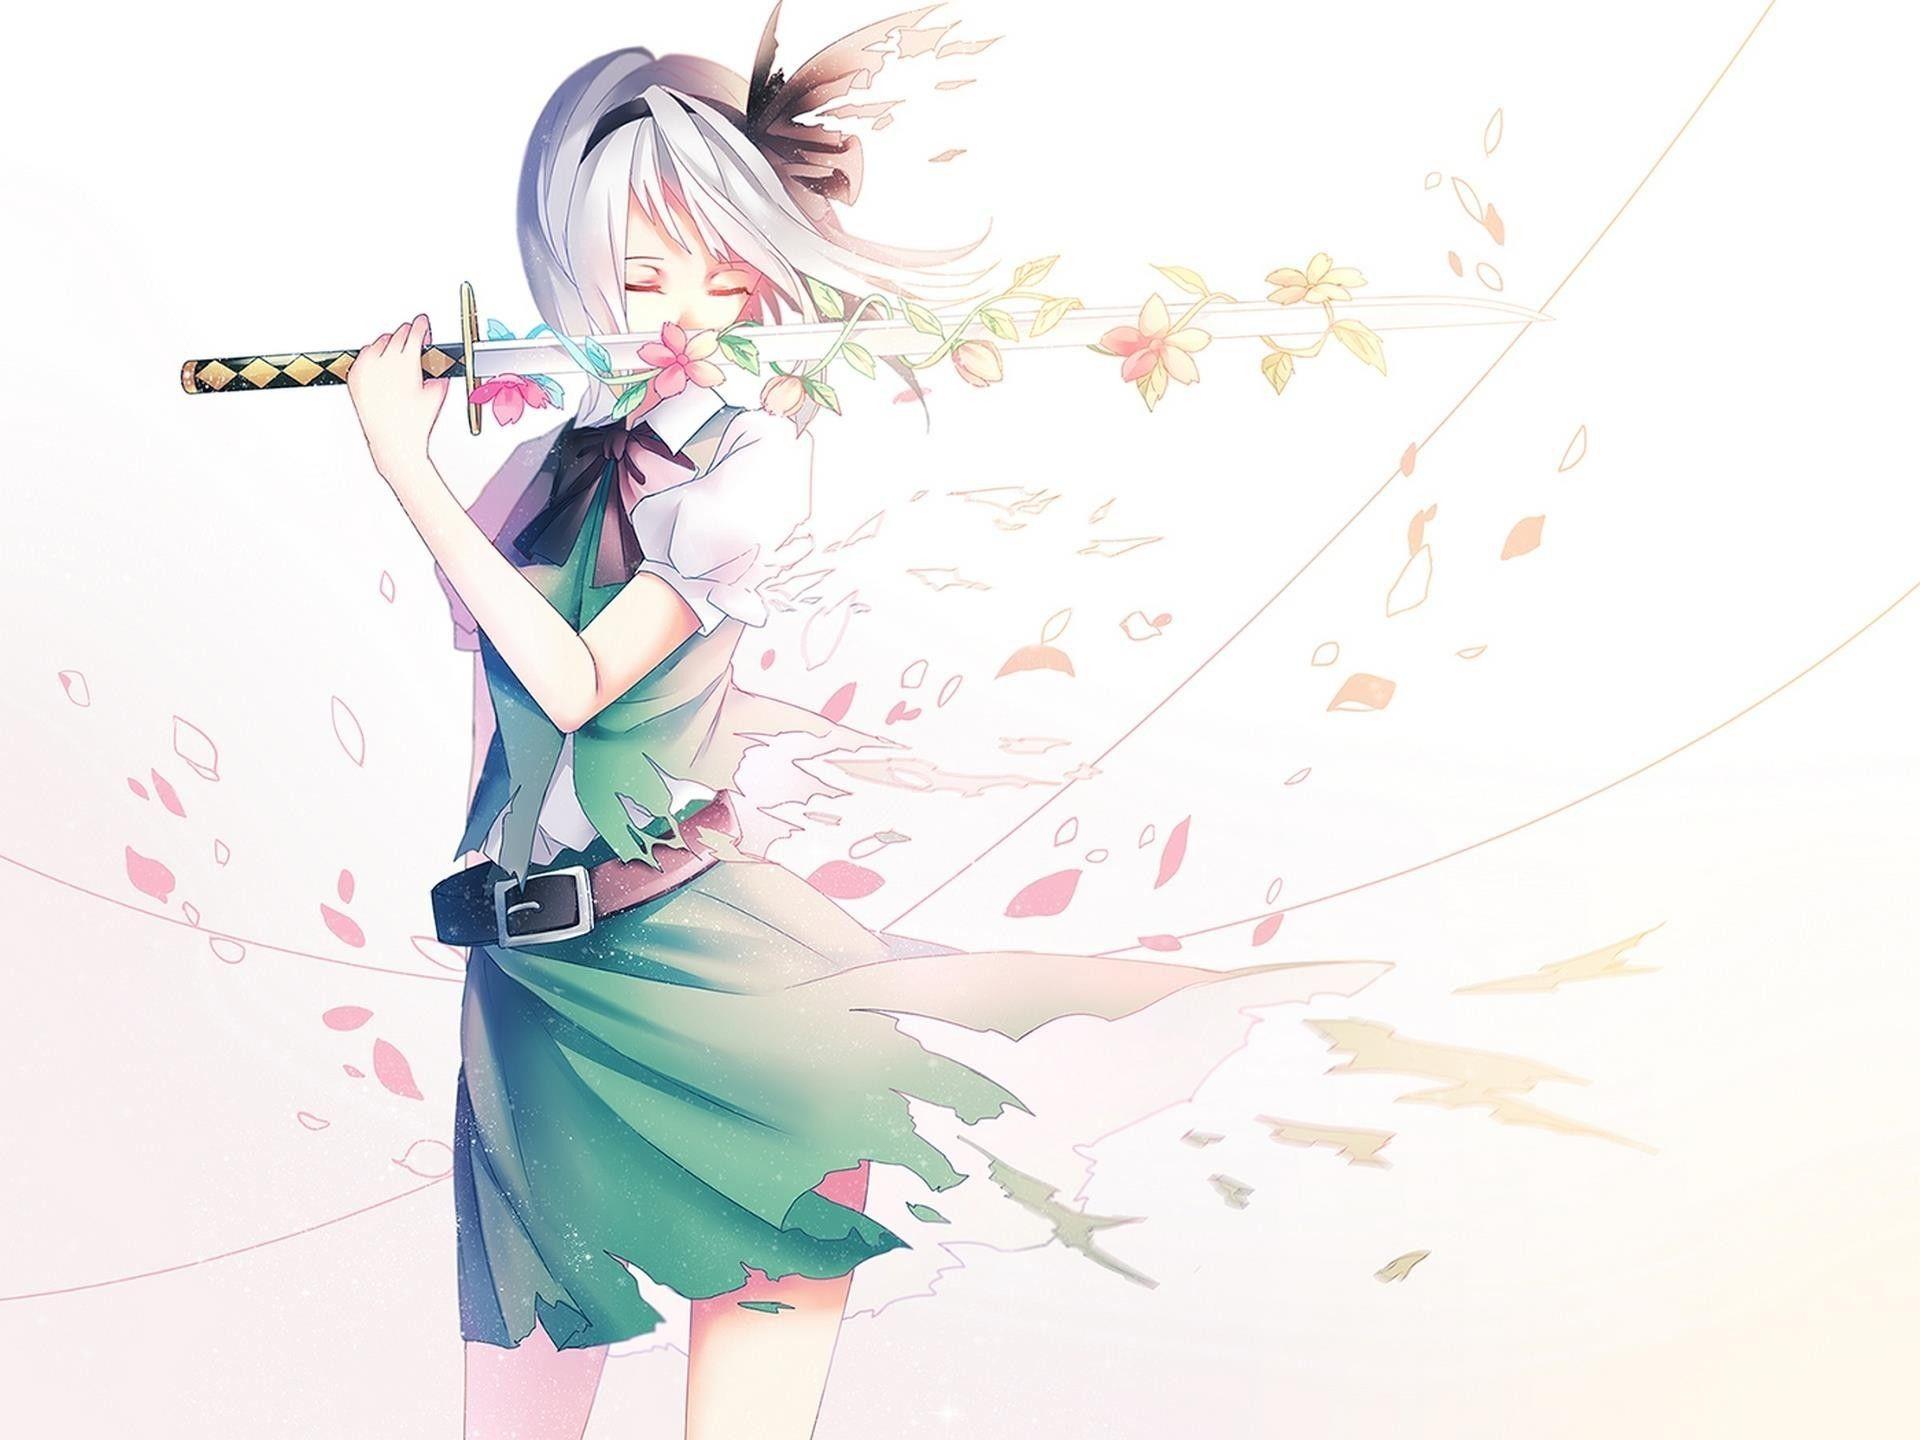 Wallpaper 4k Anime Warrior Girl With Sword 4k Wallpaper